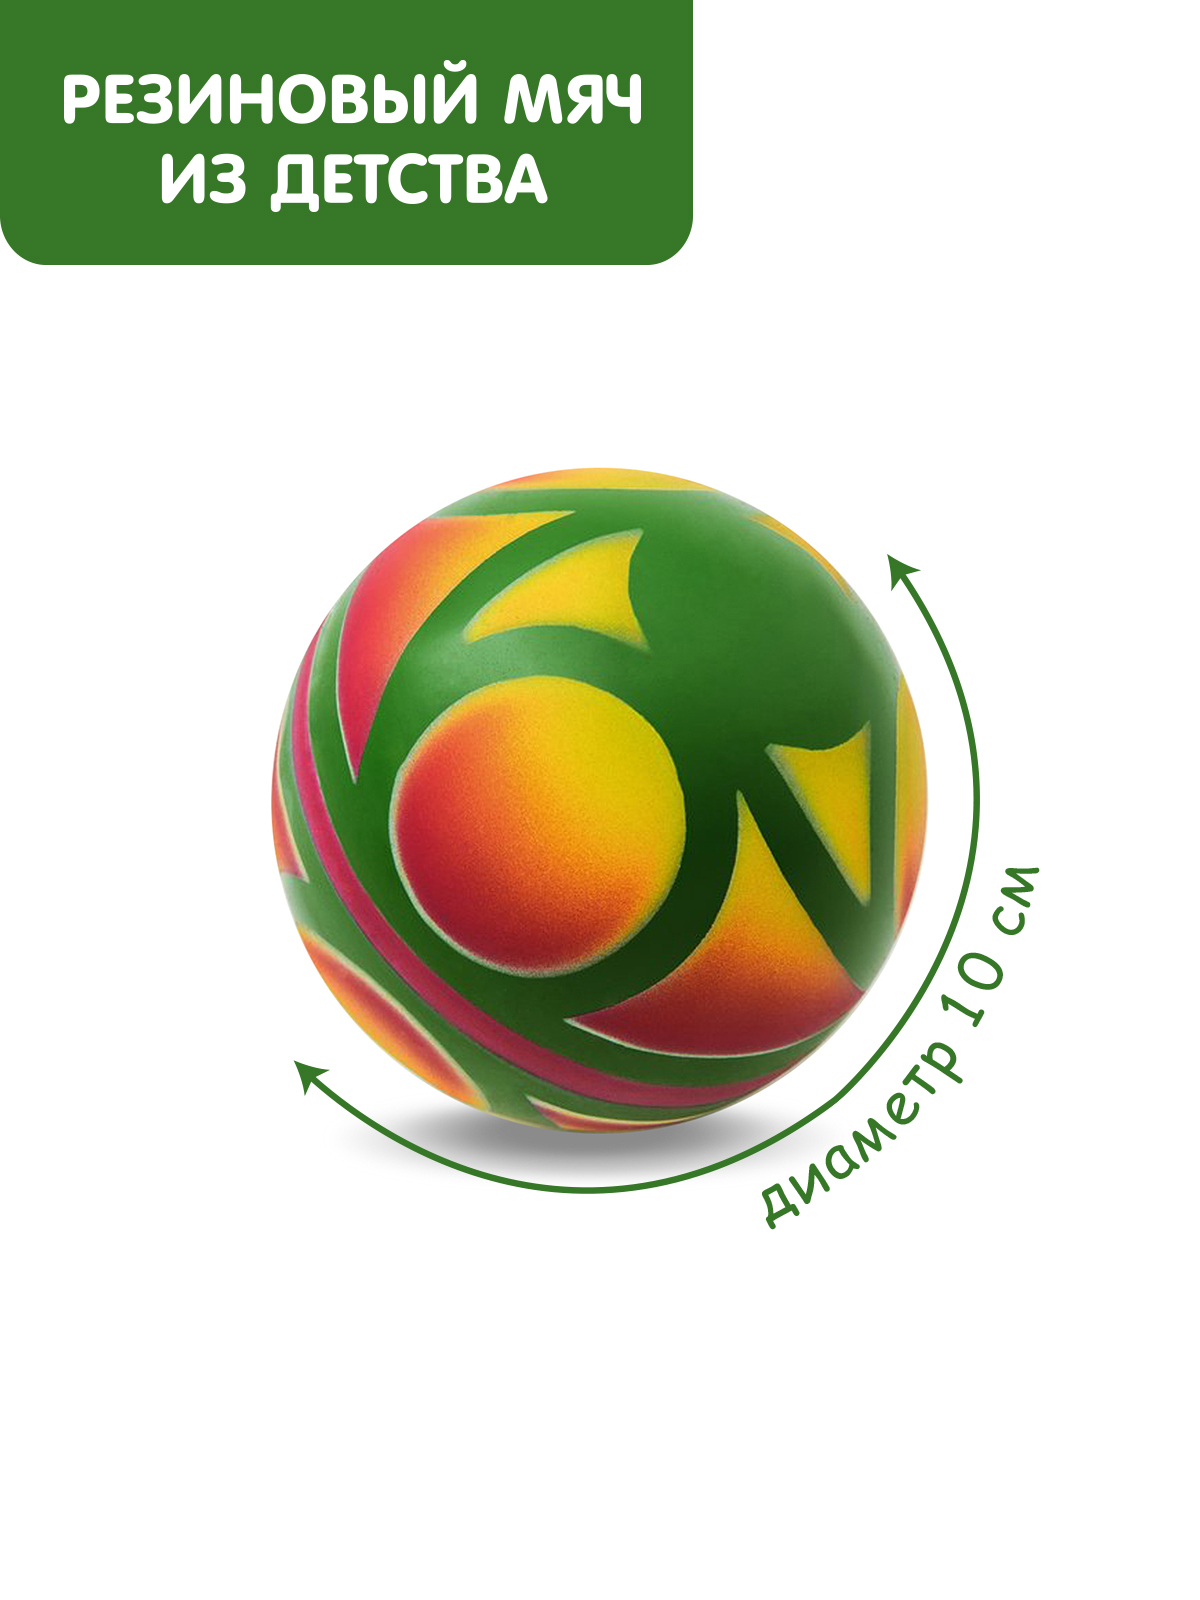 Мяч ЧАПАЕВ диаметр 100 мм Вертушок зеленый красный желтый - фото 1